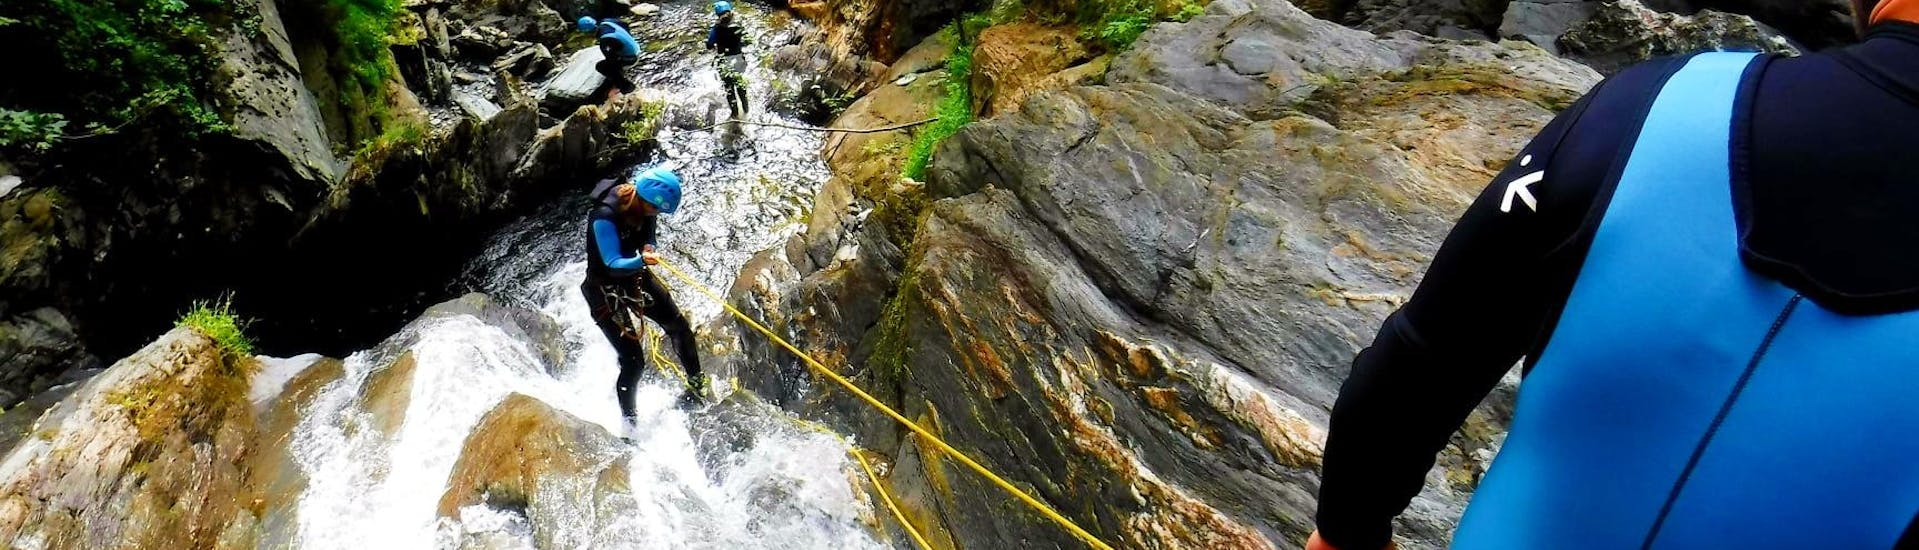 Eine Teilnehmerin seilt sich beim Canyoning im Rettenbach - Online mit FROST einen Wasserfall hinunter.